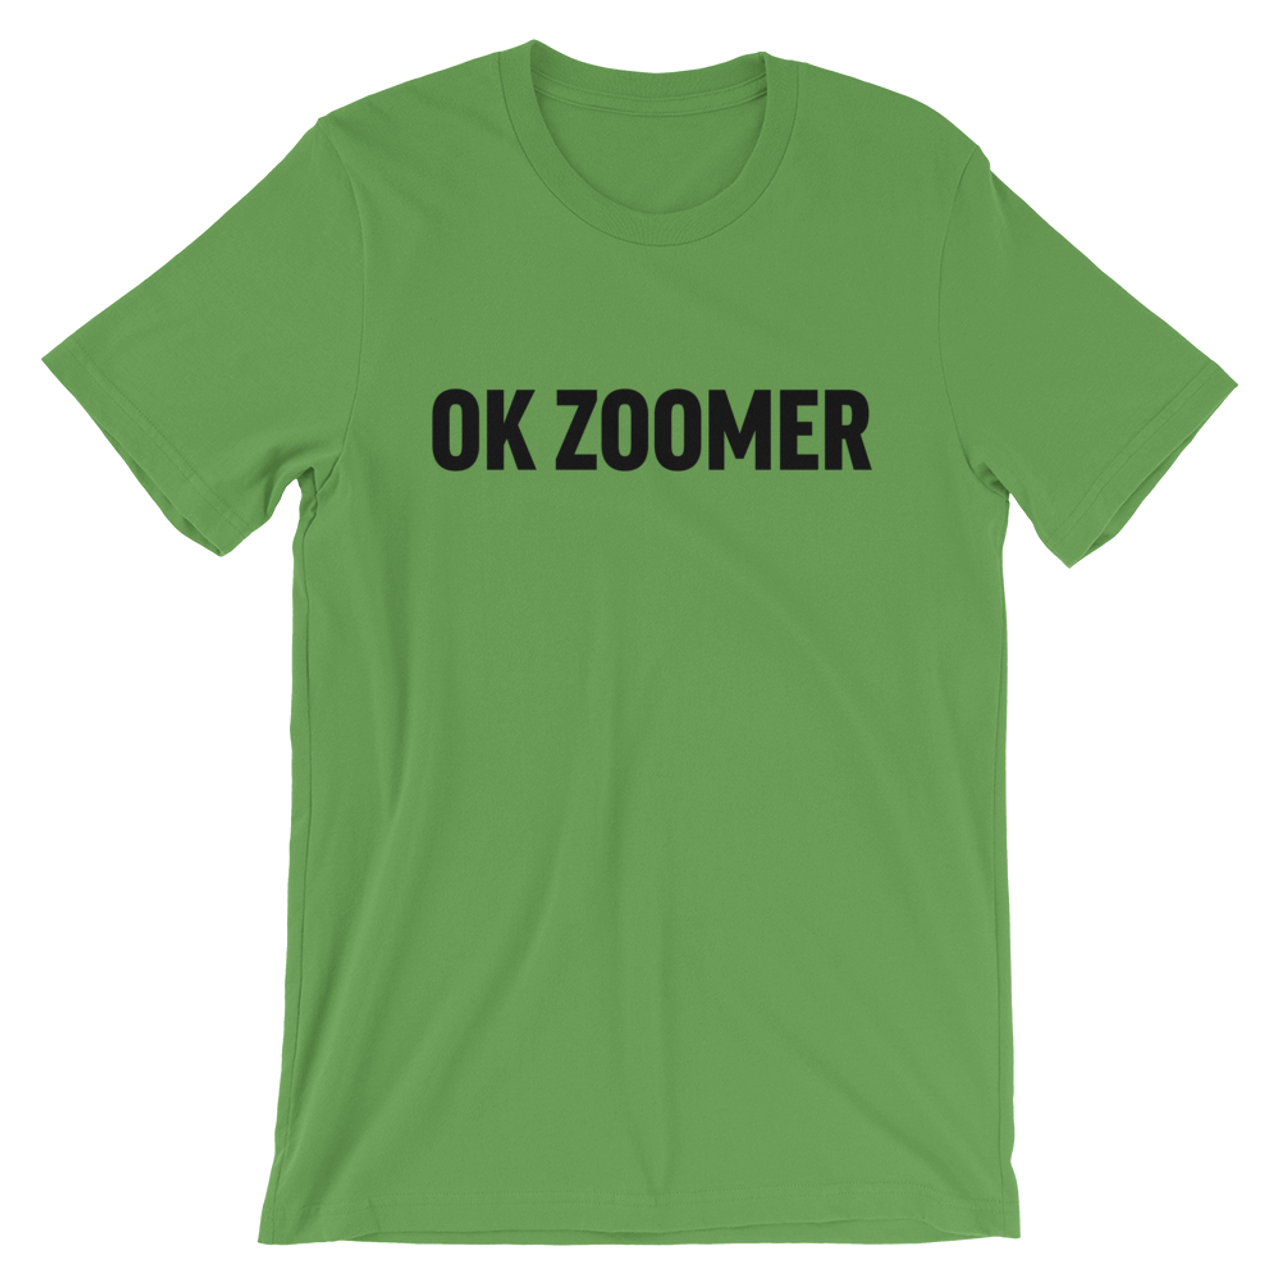 "OK ZOOMER"